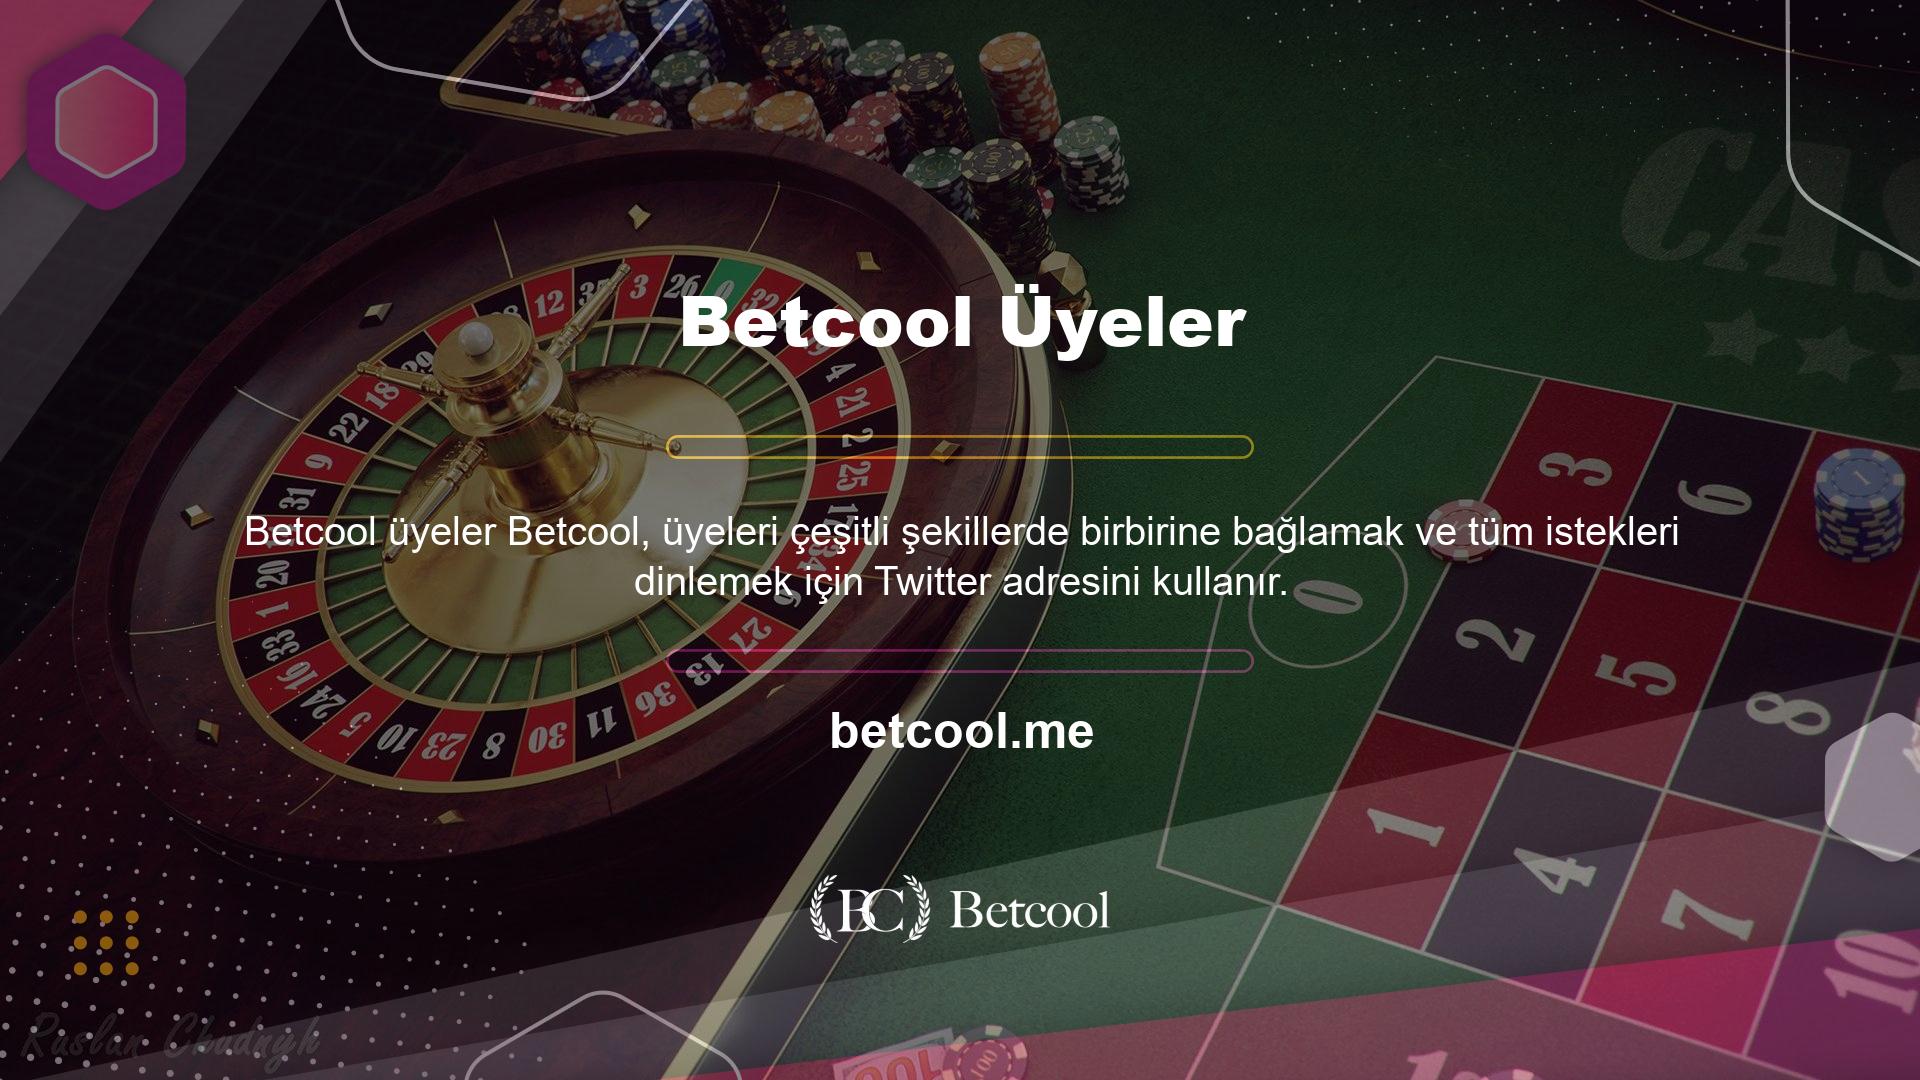 Betcool casino sitesi, üye memnuniyeti odaklı çalışmalarıyla bilinir ve üyeleriyle çeşitli iletişim kanalları aracılığıyla etkileşime geçerek casino sektöründe sesini duyurmayı başarmıştır